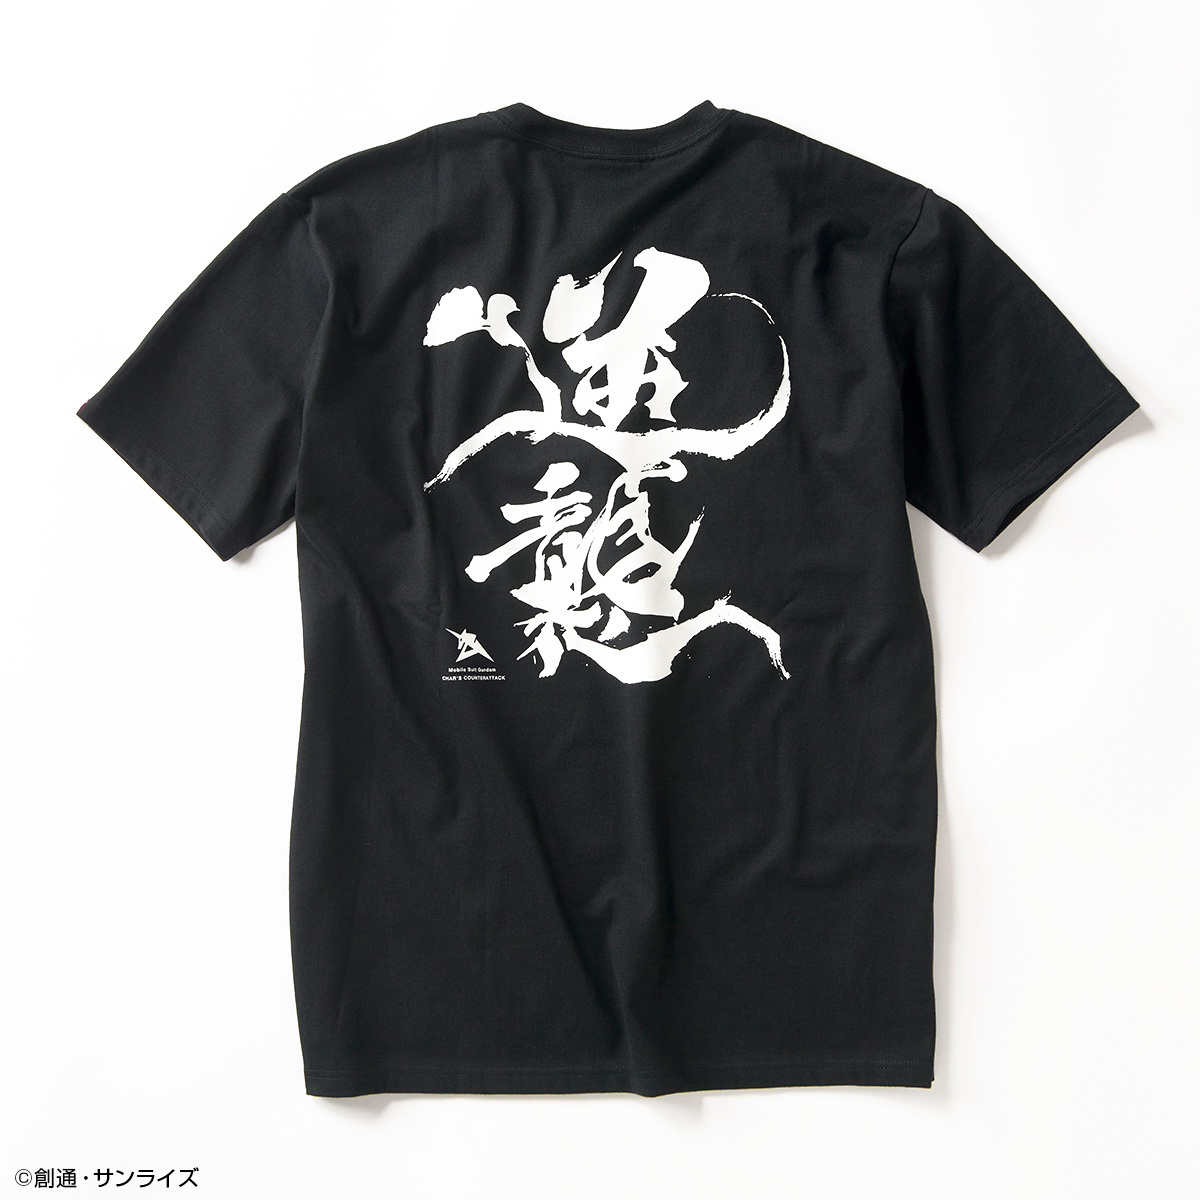 STRICT-G JAPANより『水星の魔女』『閃光のハサウェイ』『逆襲のシャア』から、筆絵タッチがダイナミックな、モビルスーツデザインTシャツ3種が登場!